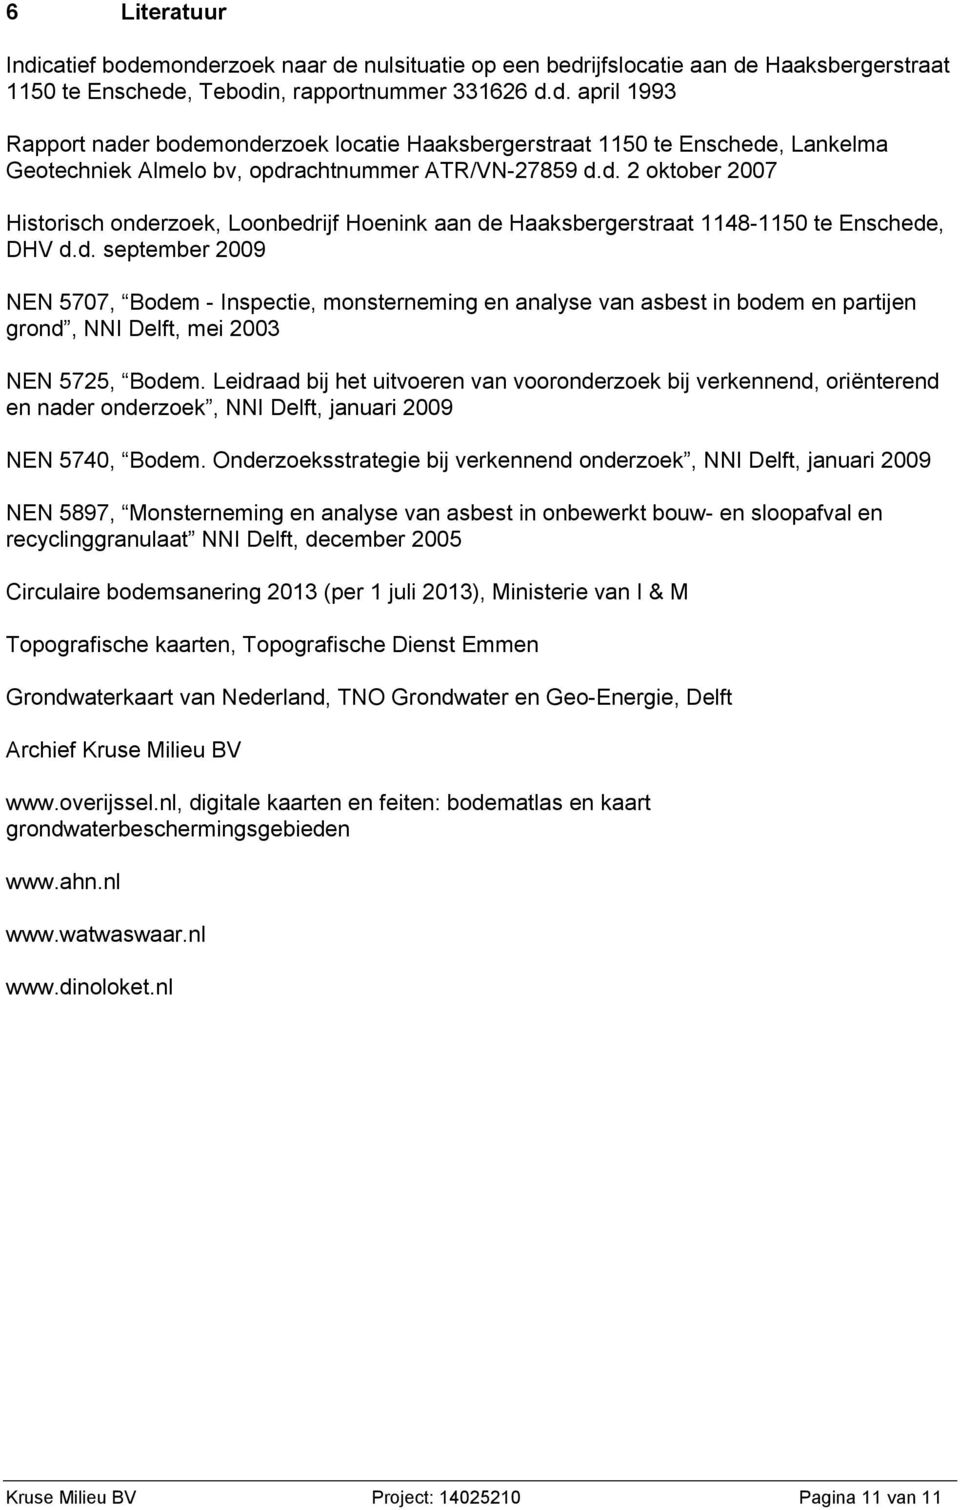 Leidraad bij het uitvoeren van vooronderzoek bij verkennend, oriënterend en nader onderzoek, NNI Delft, januari 2009 NEN 5740, Bodem.